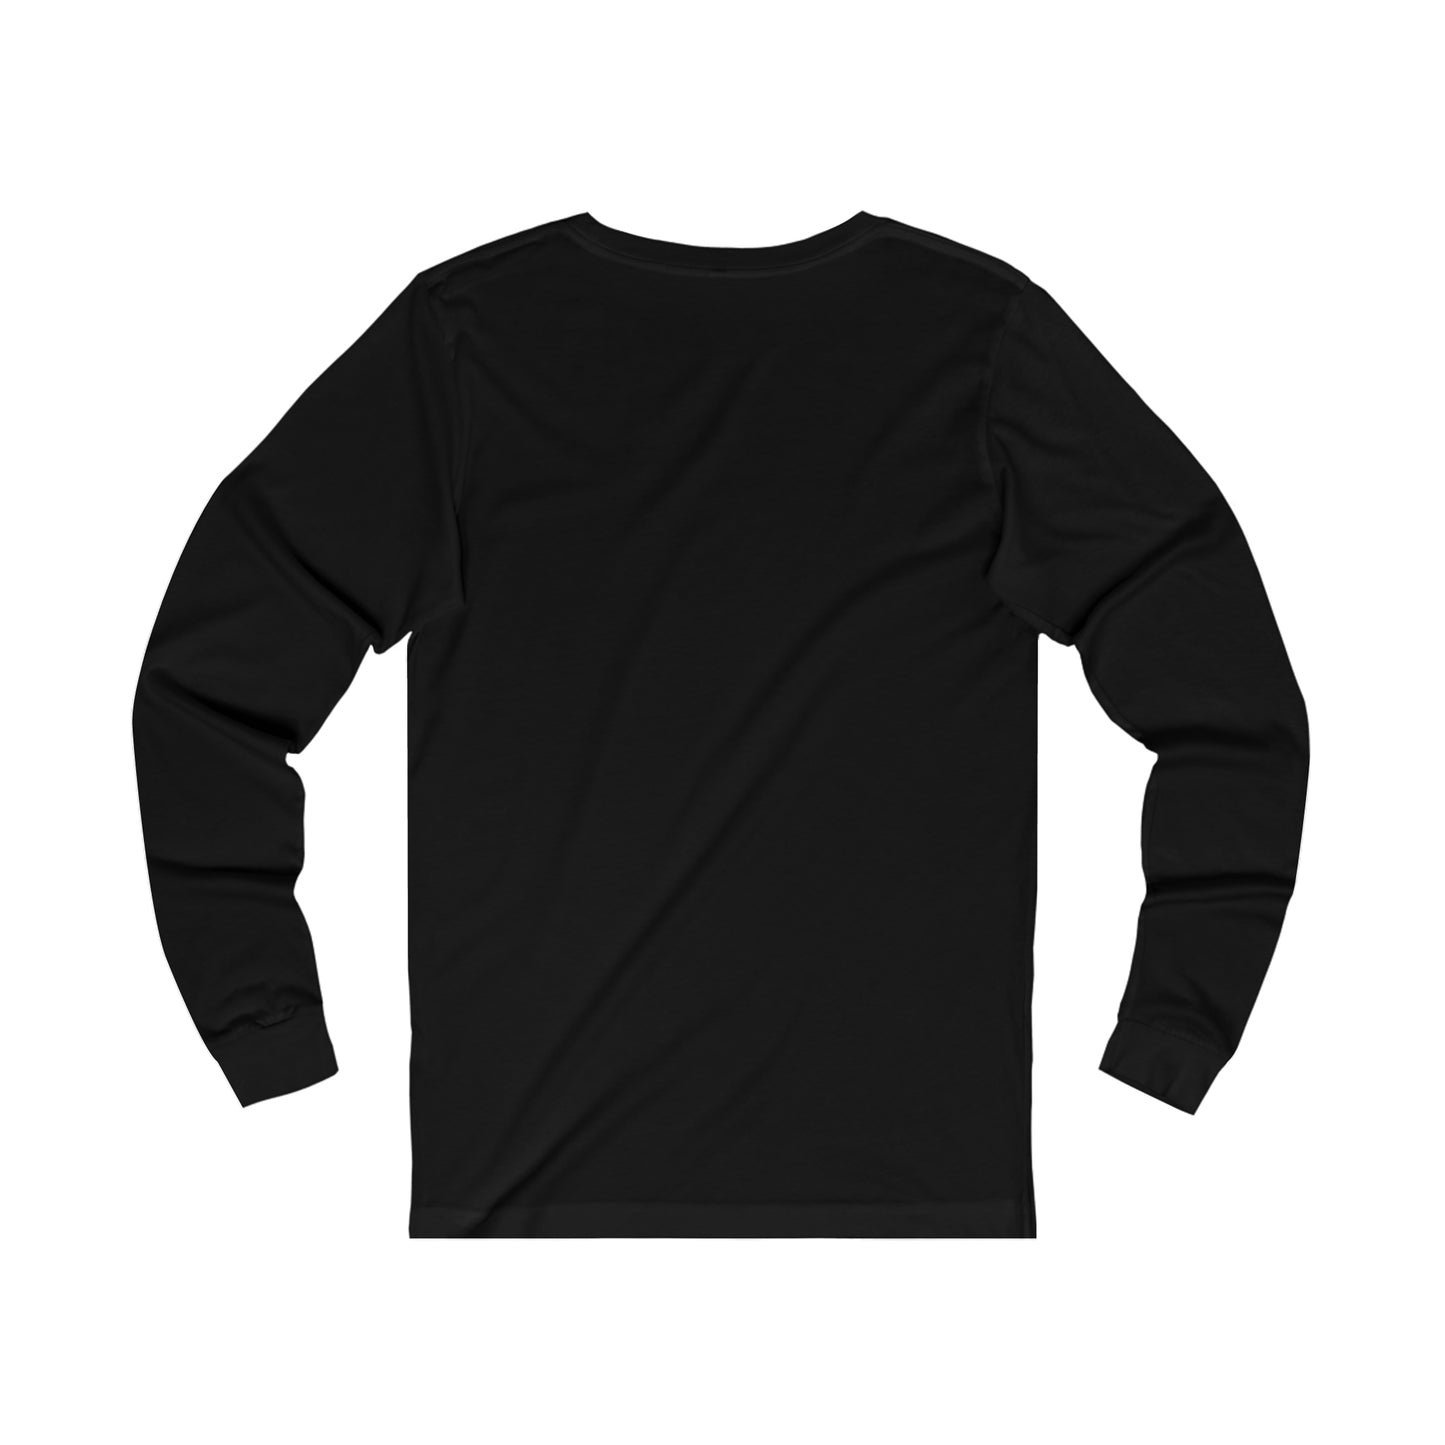 Pluck Cancer Men's Jersey Long Sleeve T-Shirt - Black